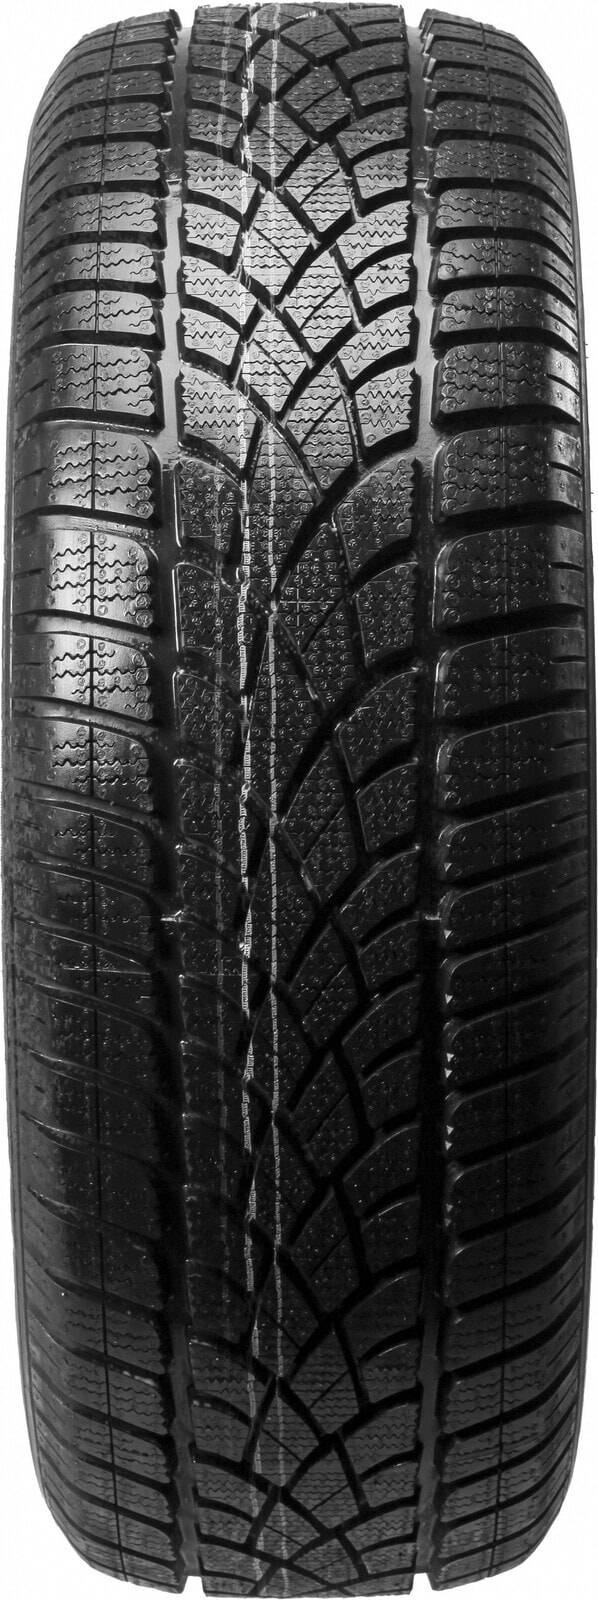 Шины для внедорожника зимние Dunlop SP Winter Sport 3D N0 XL 3PMSF M+S DOT21 235/65 R17 108H